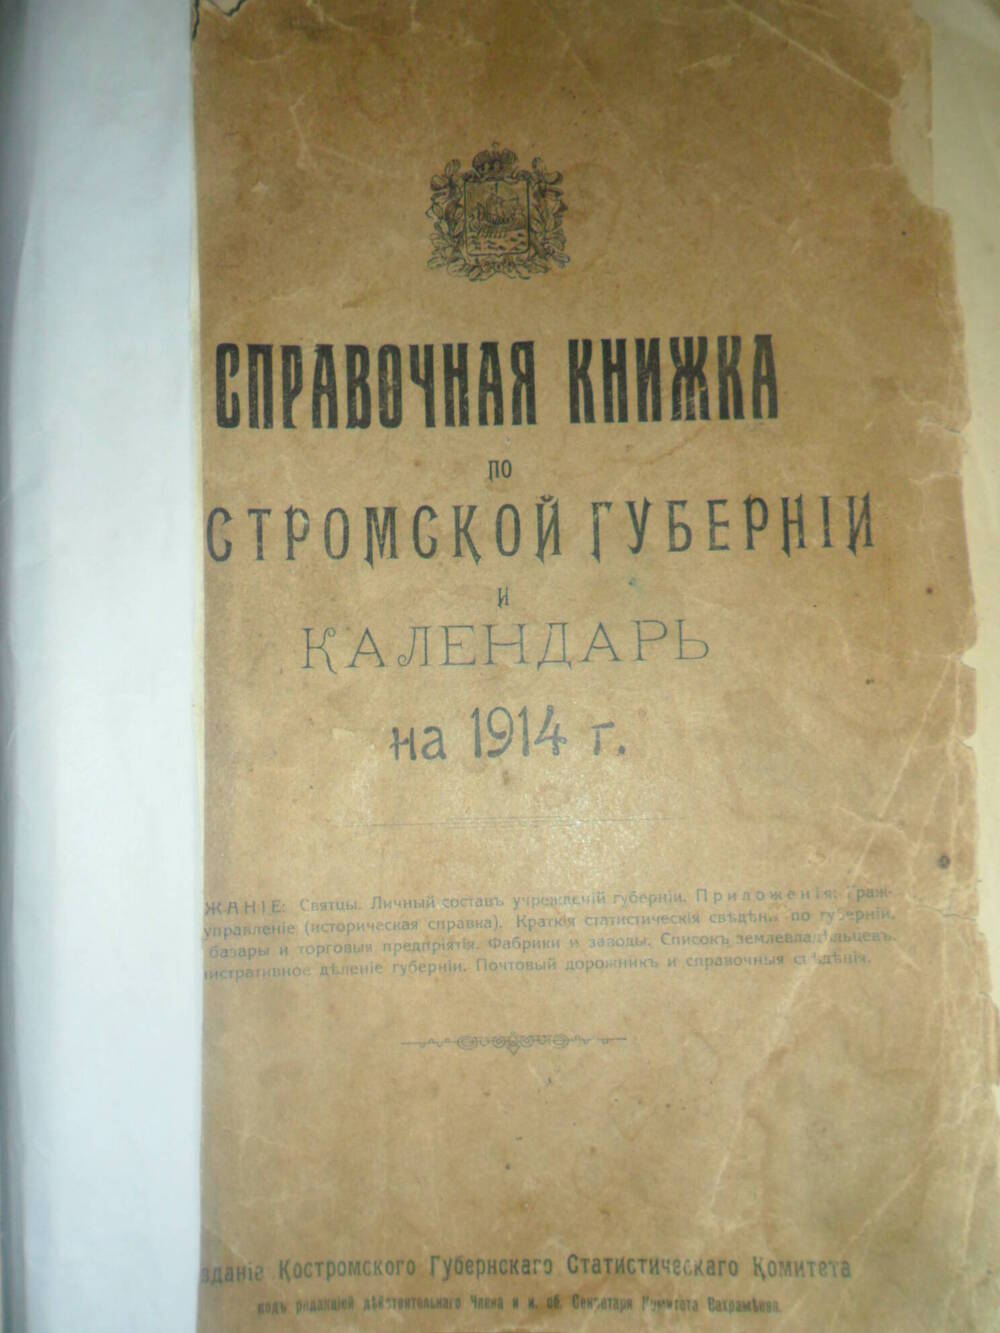 Справочная книжка по Костромской губернии и календарь на 1914 год